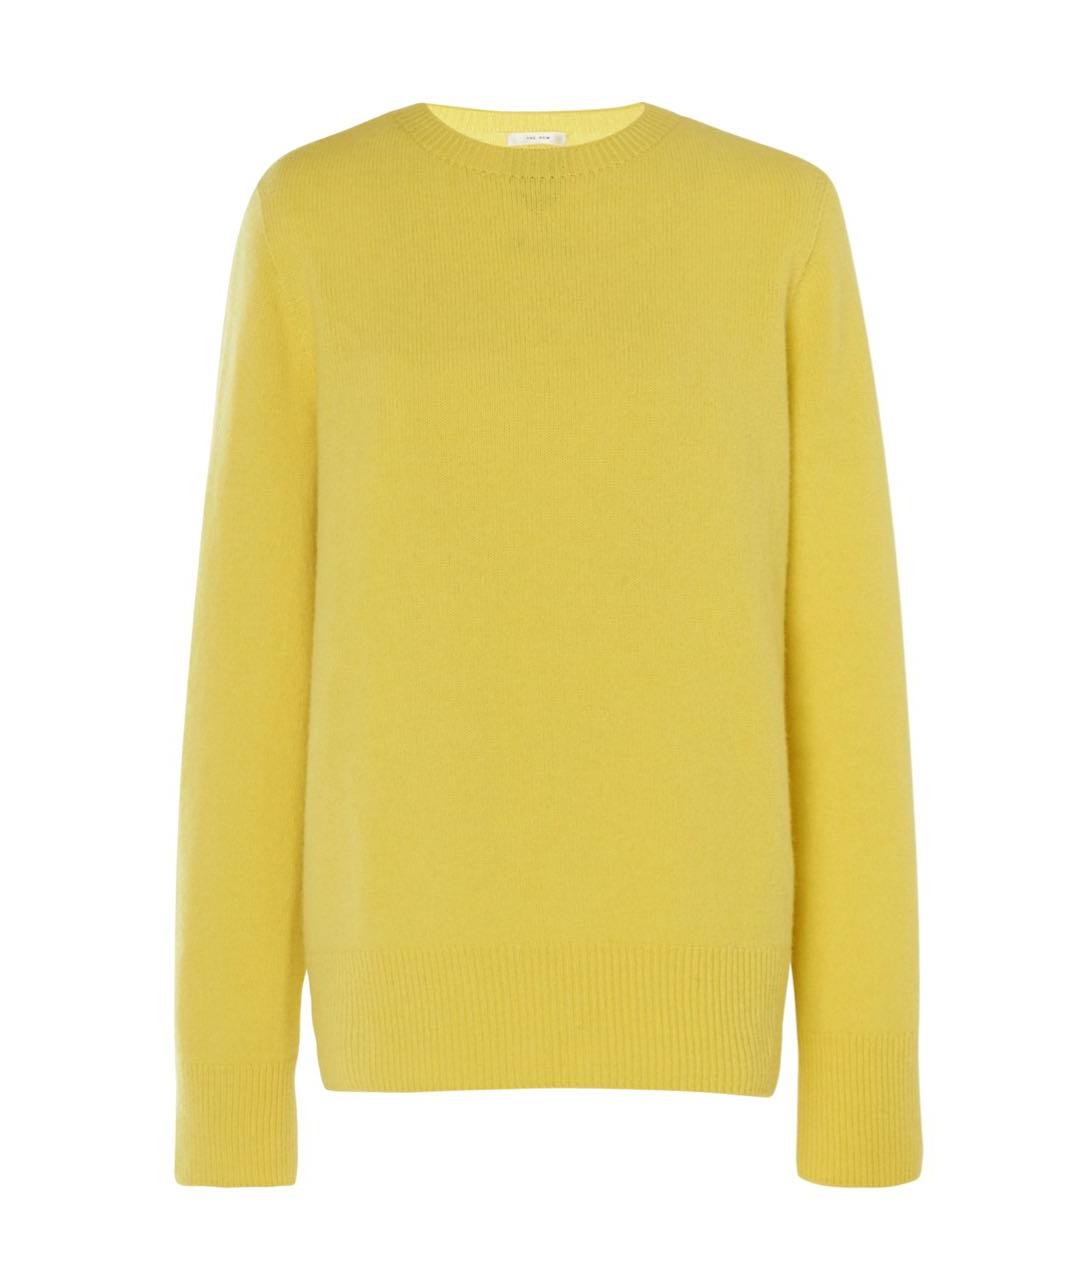 THE ROW Желтый кашемировый джемпер / свитер, фото 1